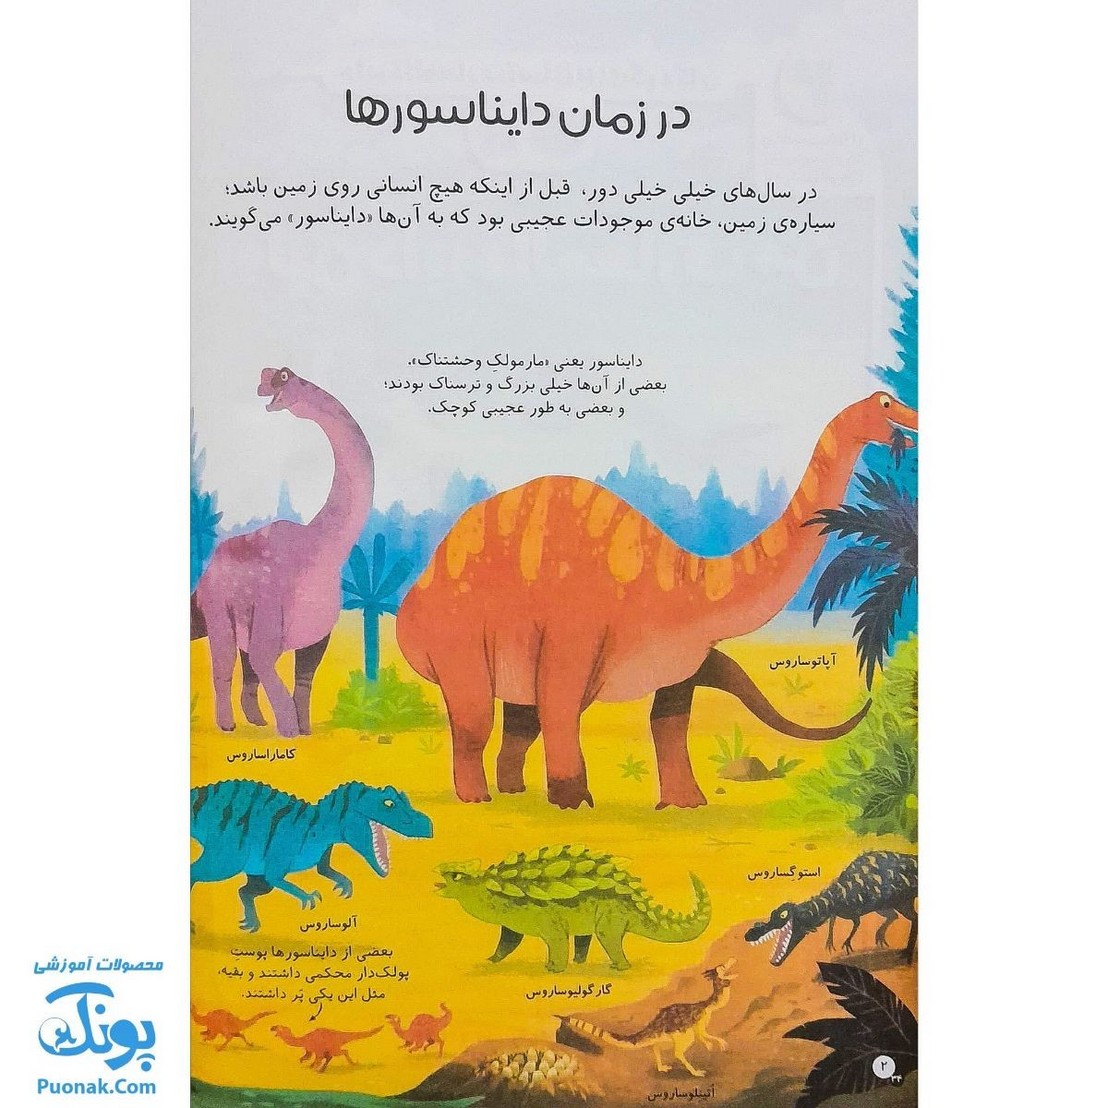 کتاب اولین دایره المعارف من درباره ی دایناسورها ۲ نشر ذکر